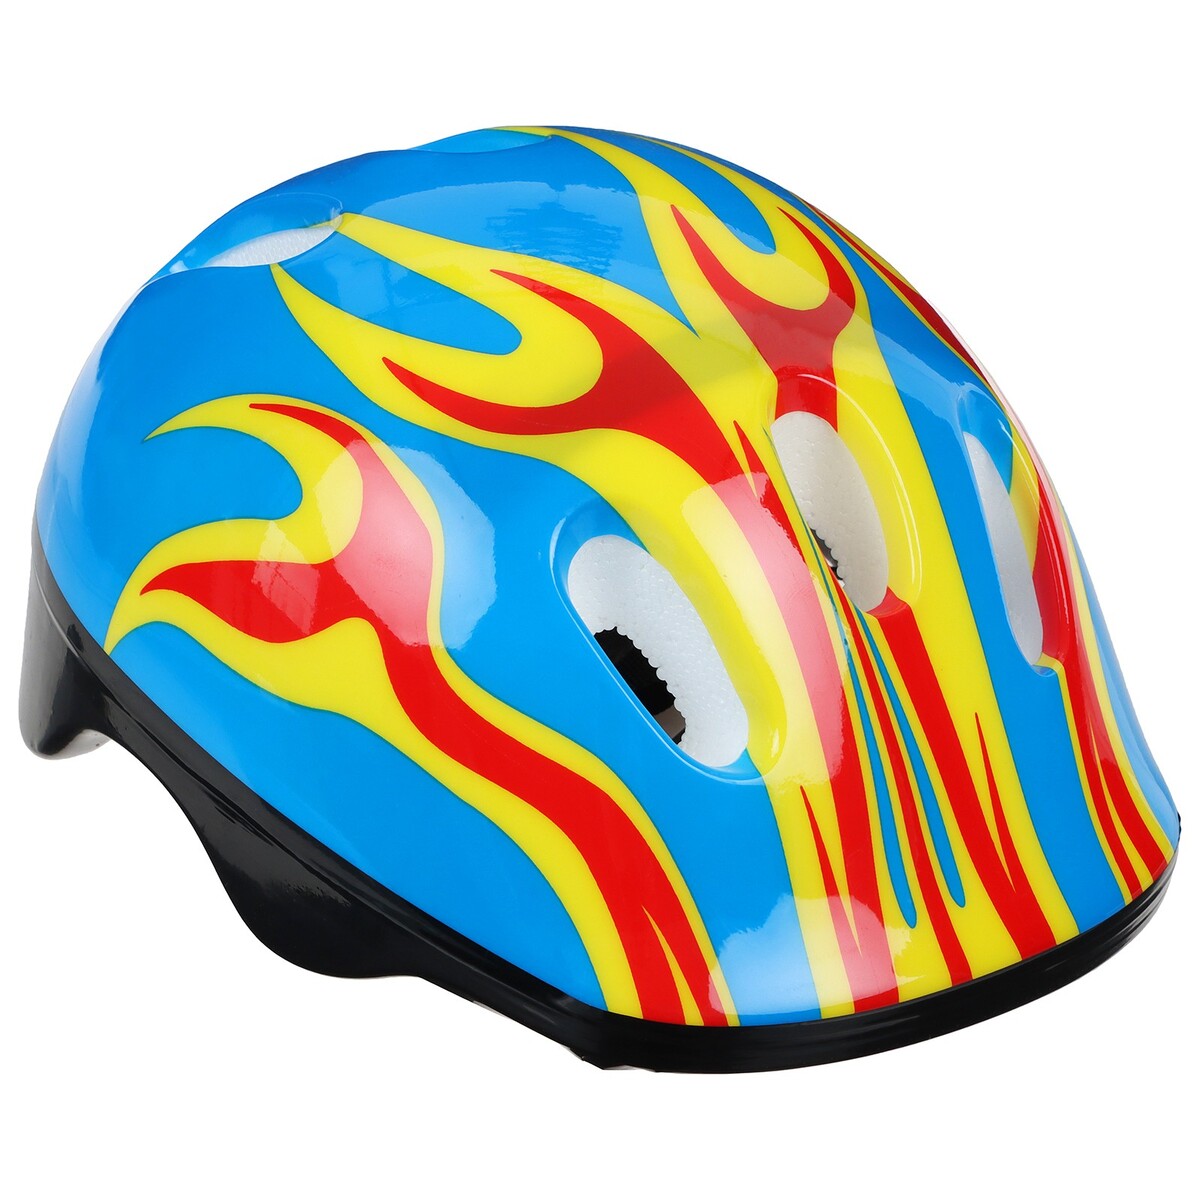 Шлем защитный детский onlytop ot-h6, обхват 52-54 см, цвет синий шлем защитный детский onlytop ot 502 обхват 52 54 см красный